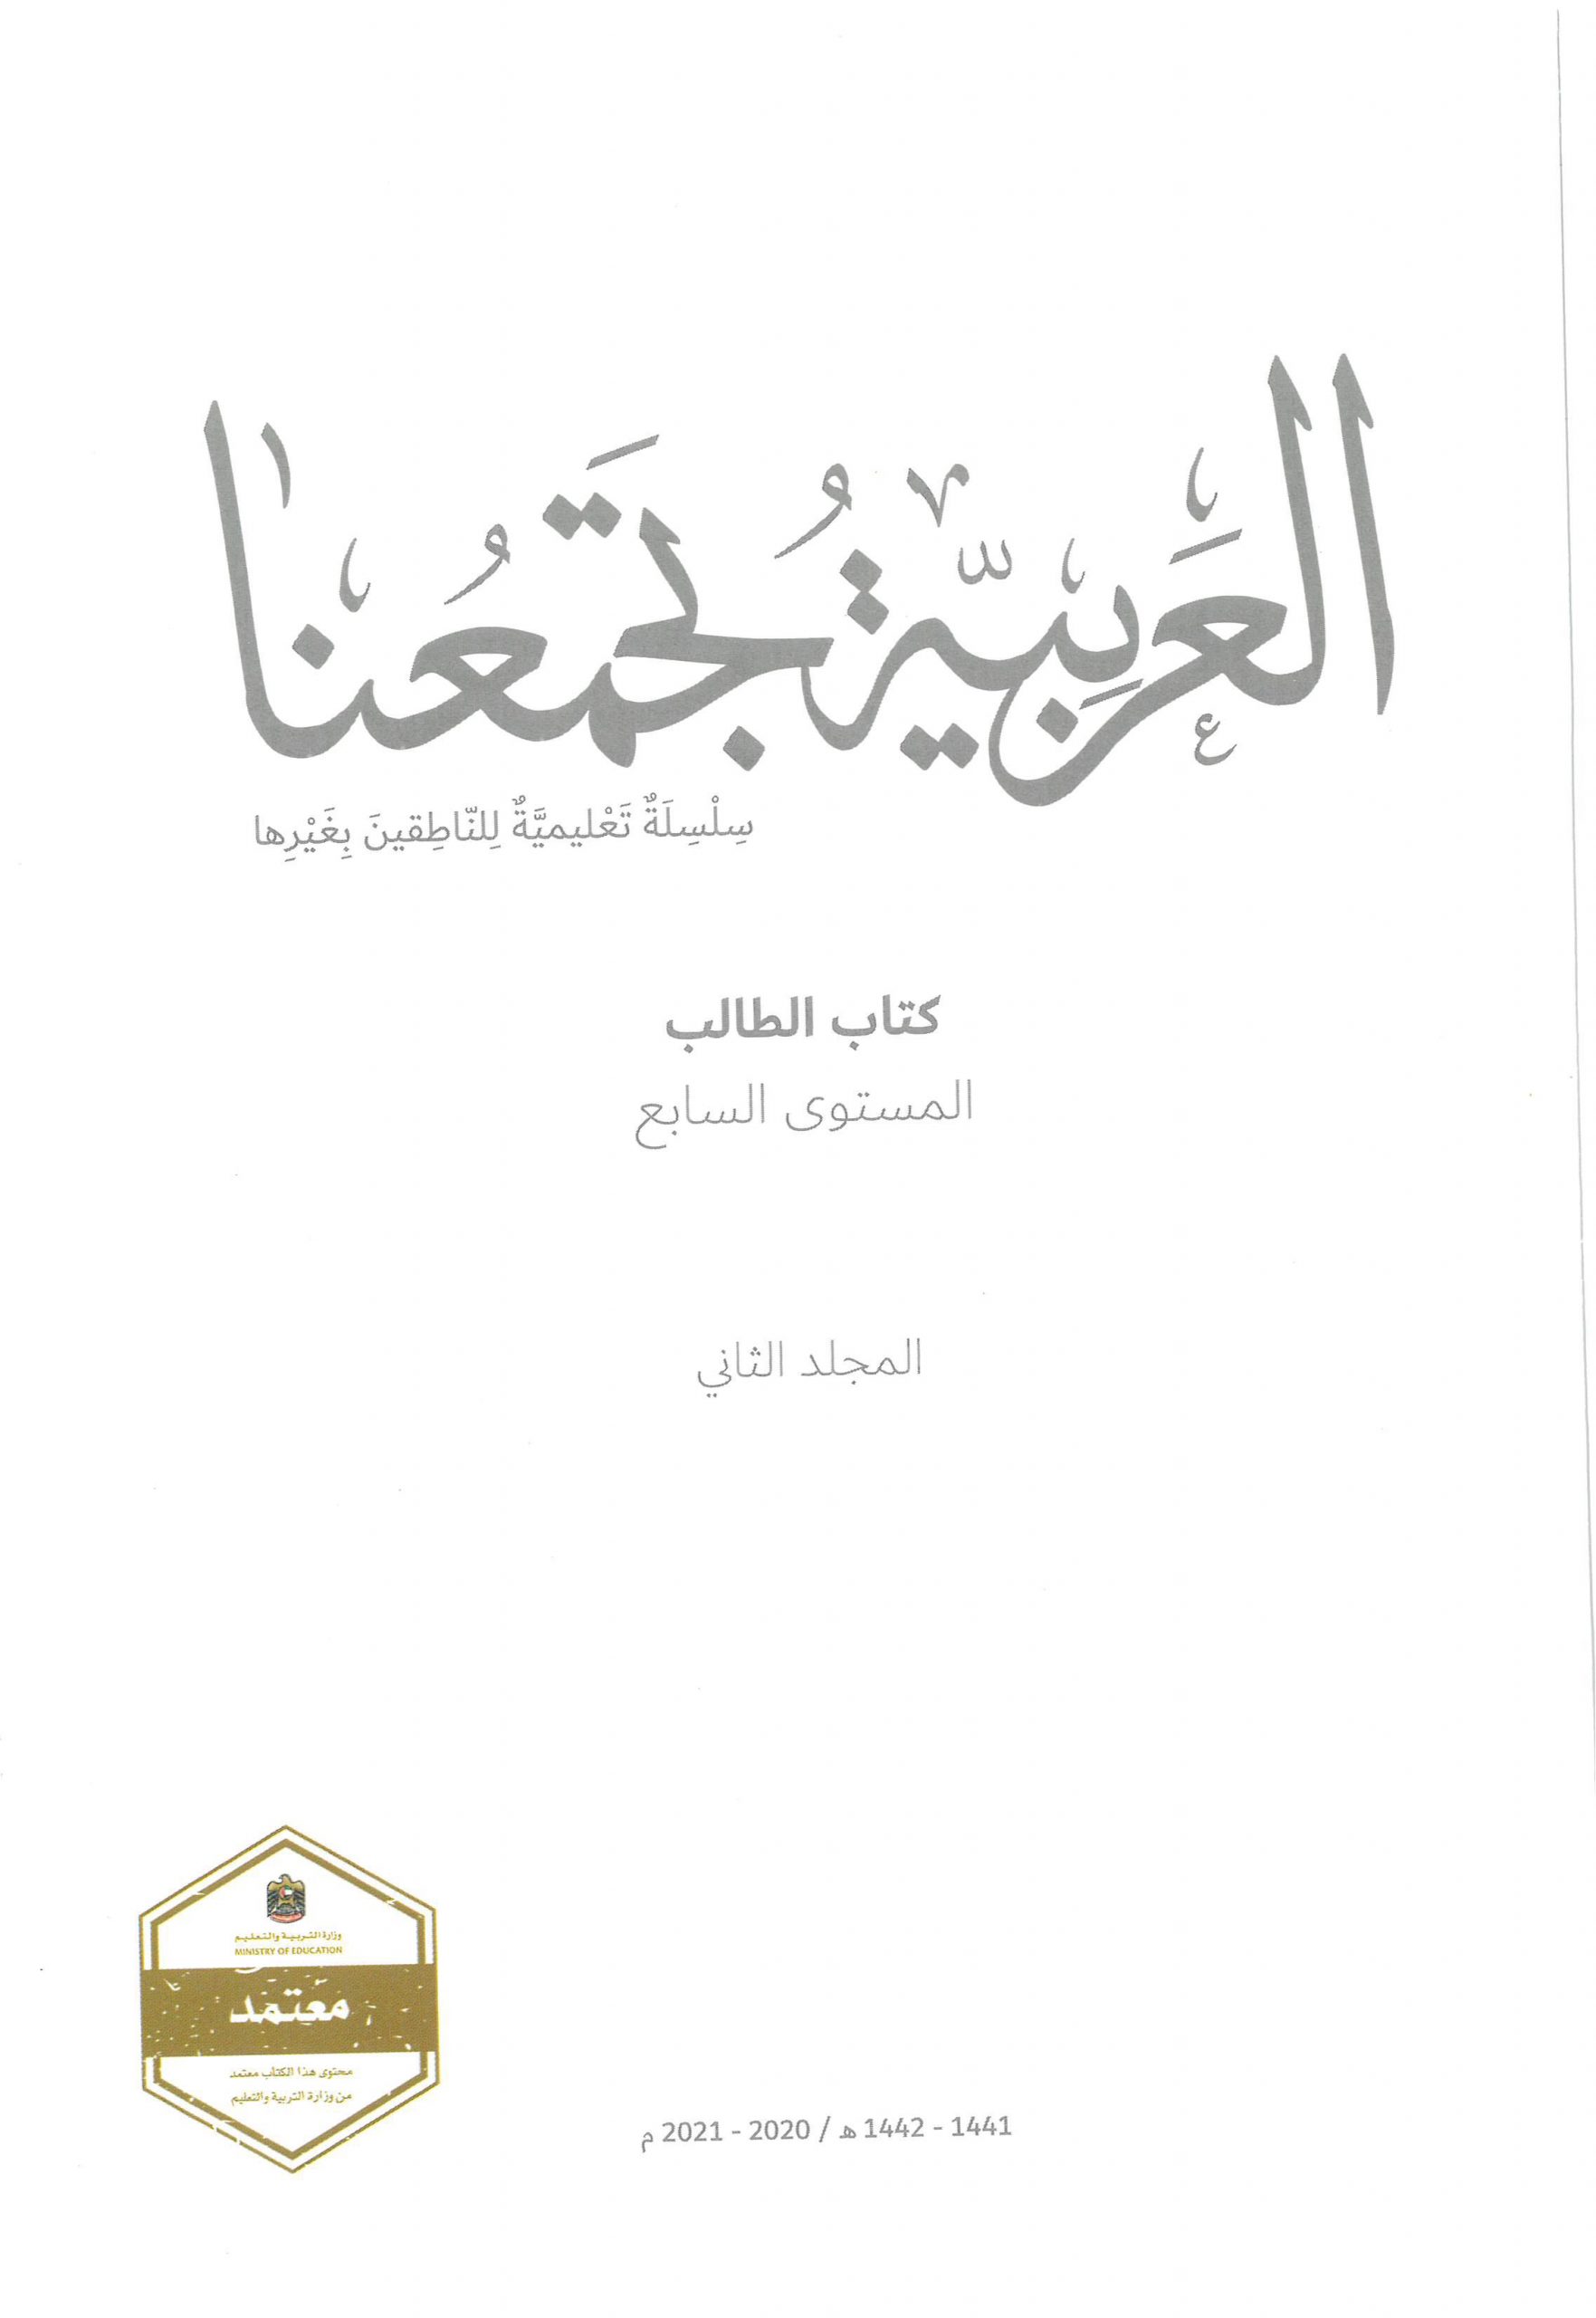 كتاب الطالب الفصل الدراسي الثاني 2020-2021 لغير الناطقين بها الصف السابع مادة اللغة العربية 